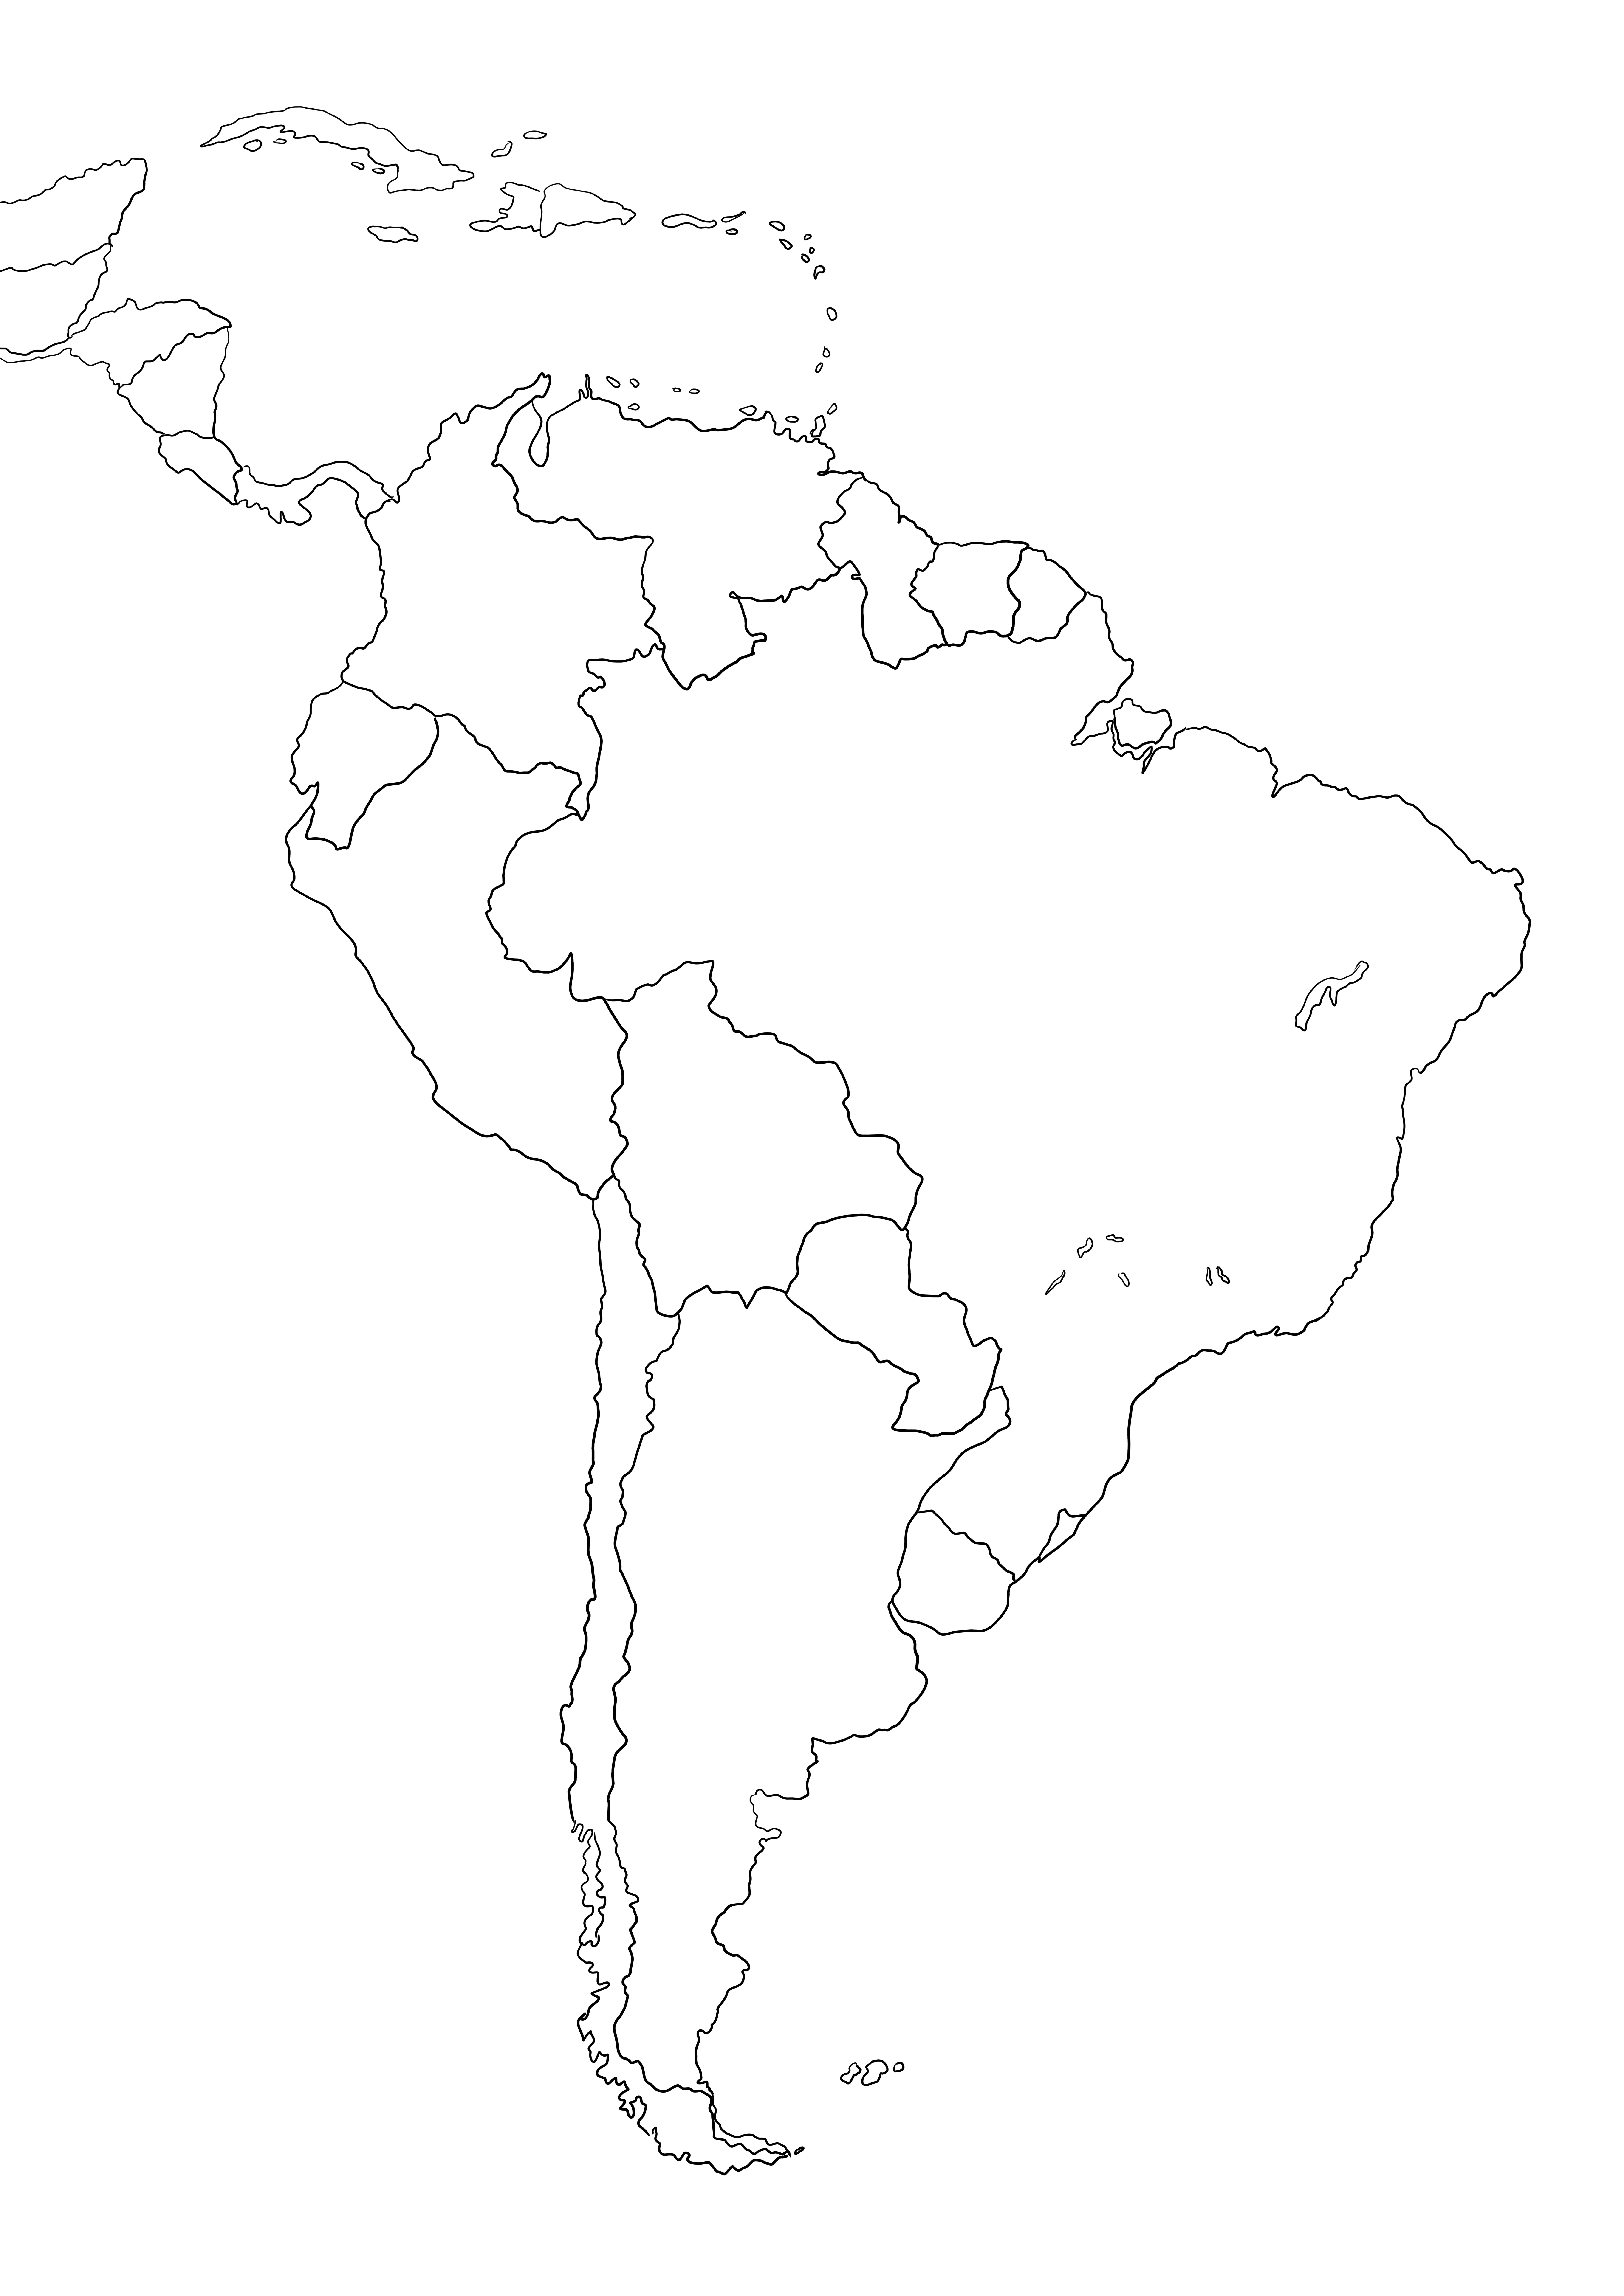 Kaart van Zuid-Amerika freebie om in te kleuren of te bewaren voor later kleurplaat